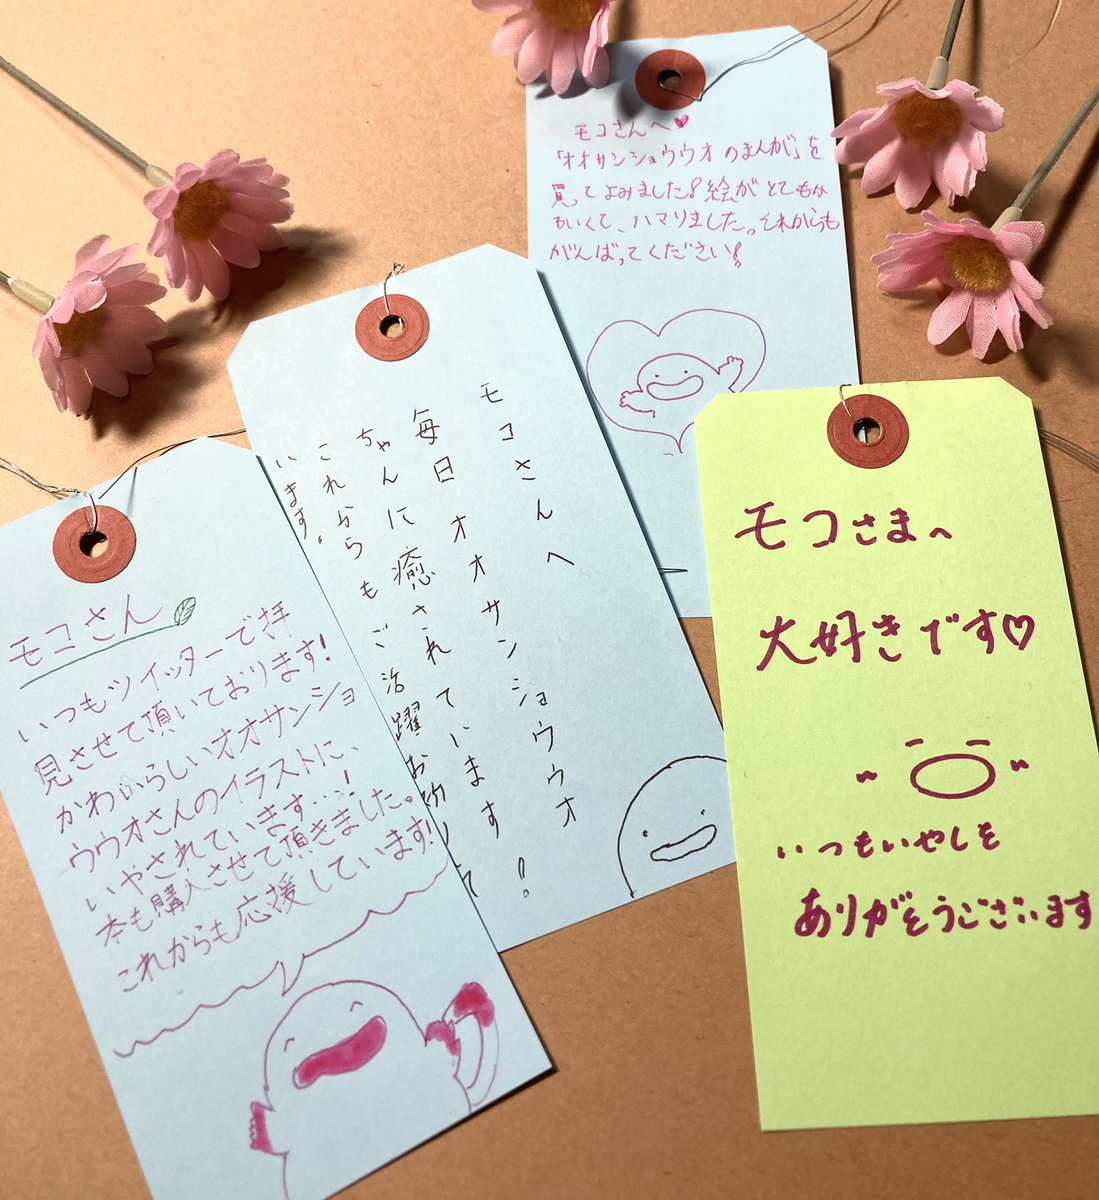 梅田ロフト様より、POPBOX OSAKAでの会場内メッセージカードを送っていただきました…!!皆オオサンショウウオ似顔絵付き!?とっても嬉しいです😭✨大変励みになります!! 